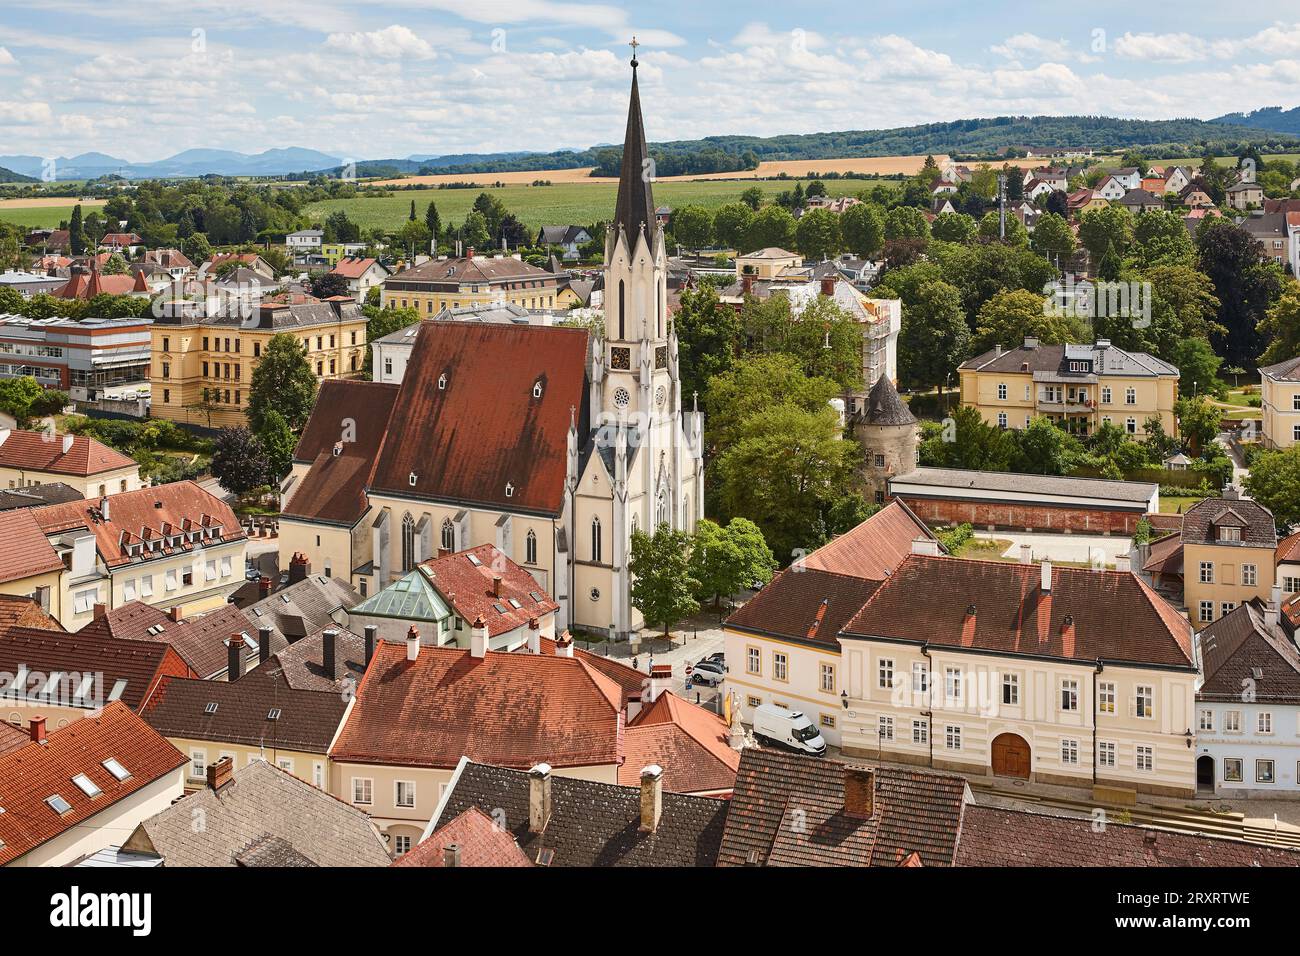 Melk-Dorf-Stadtbild im Wachautal. Kirche und Häuser. Österreich Stockfoto